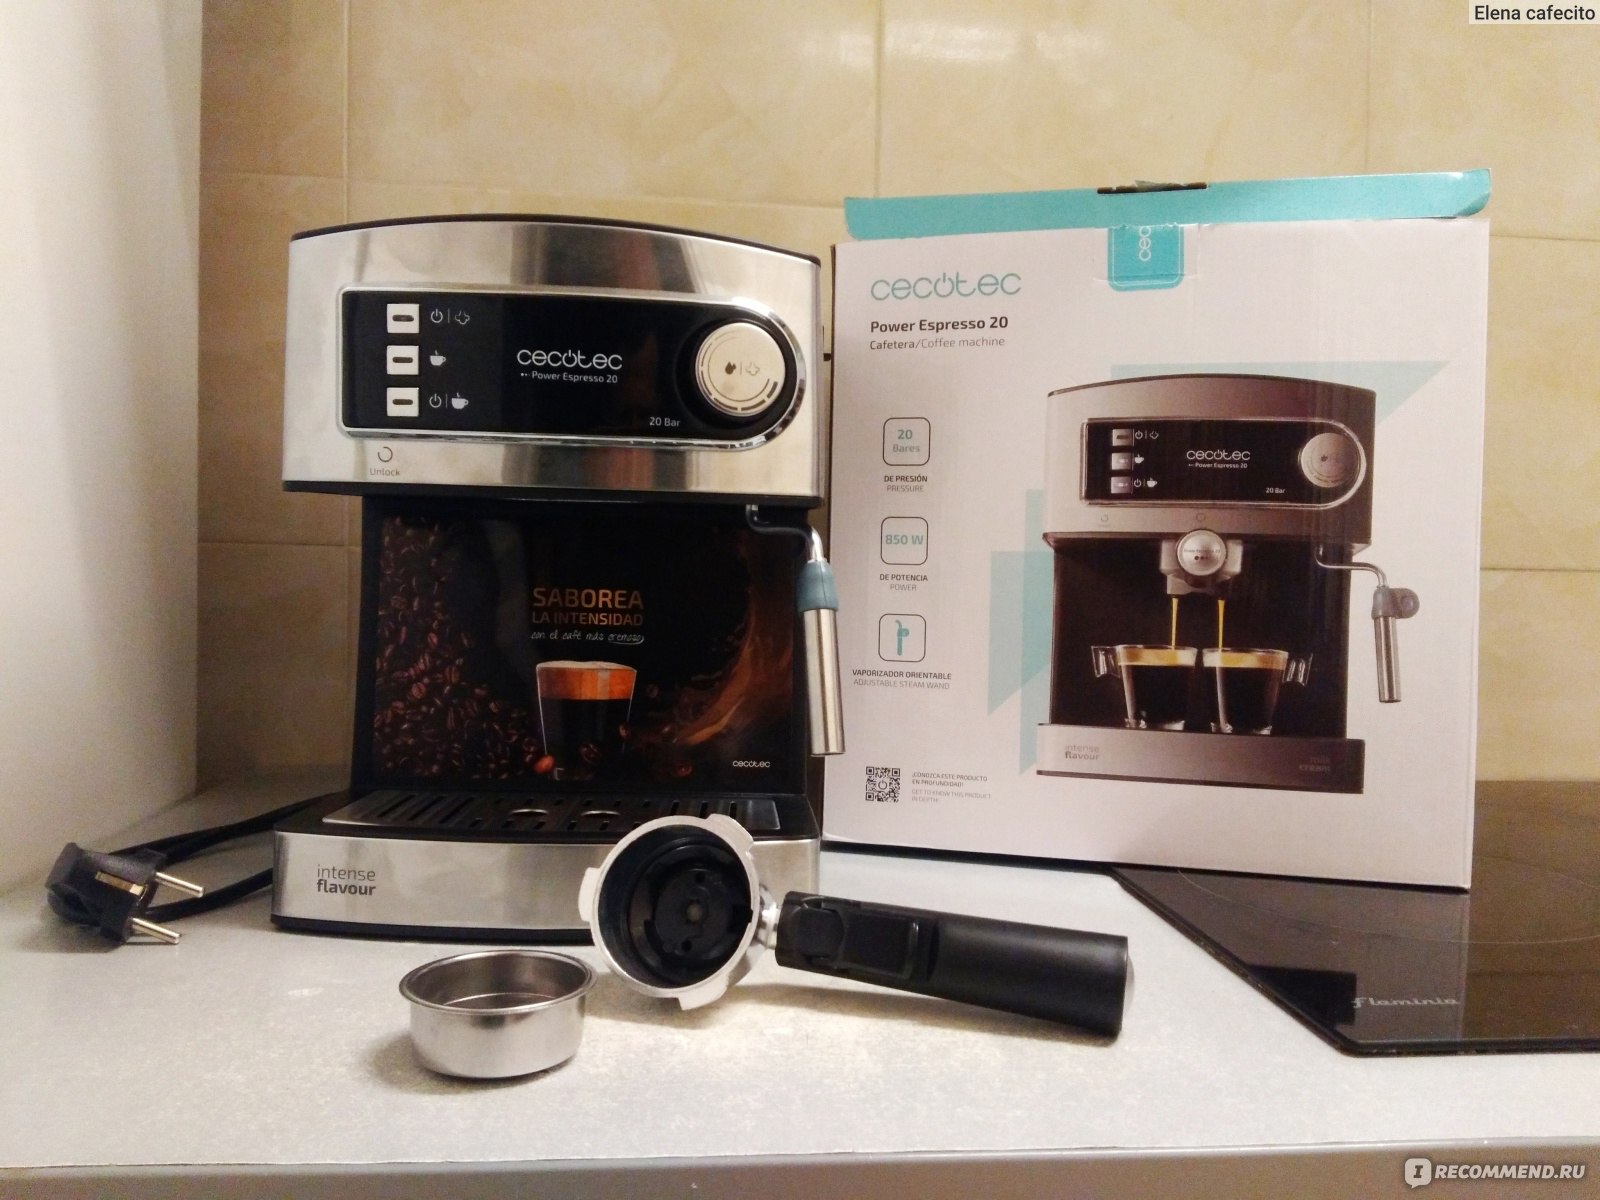 Cecotec Power Espresso 20 Cafetera Express 850W